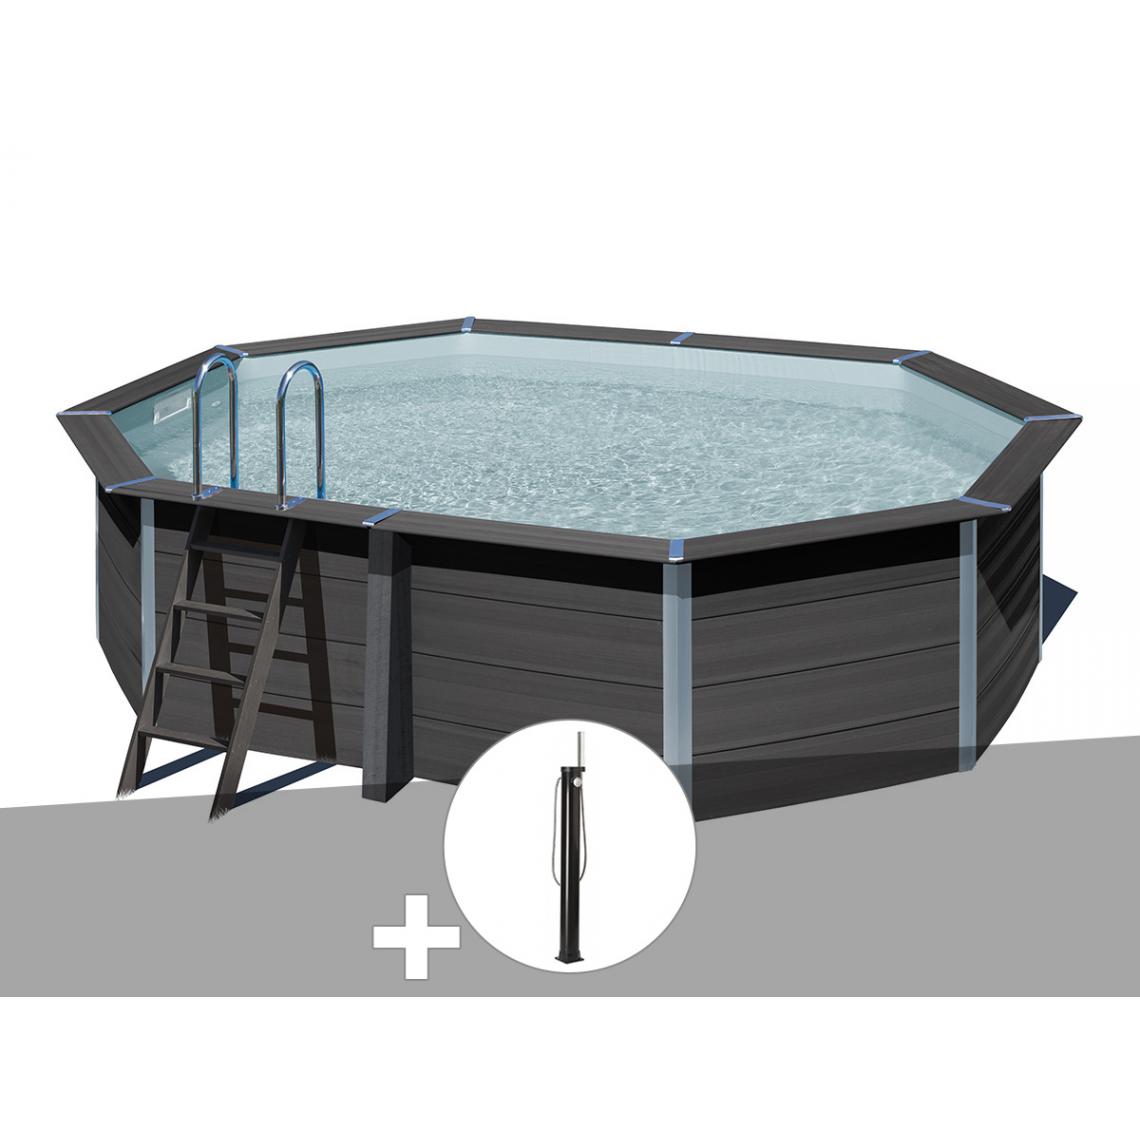 Gre - Kit piscine composite Gré Avant-Garde ovale 5,24 x 3,86 x 1,24 m + Douche - Piscines bois